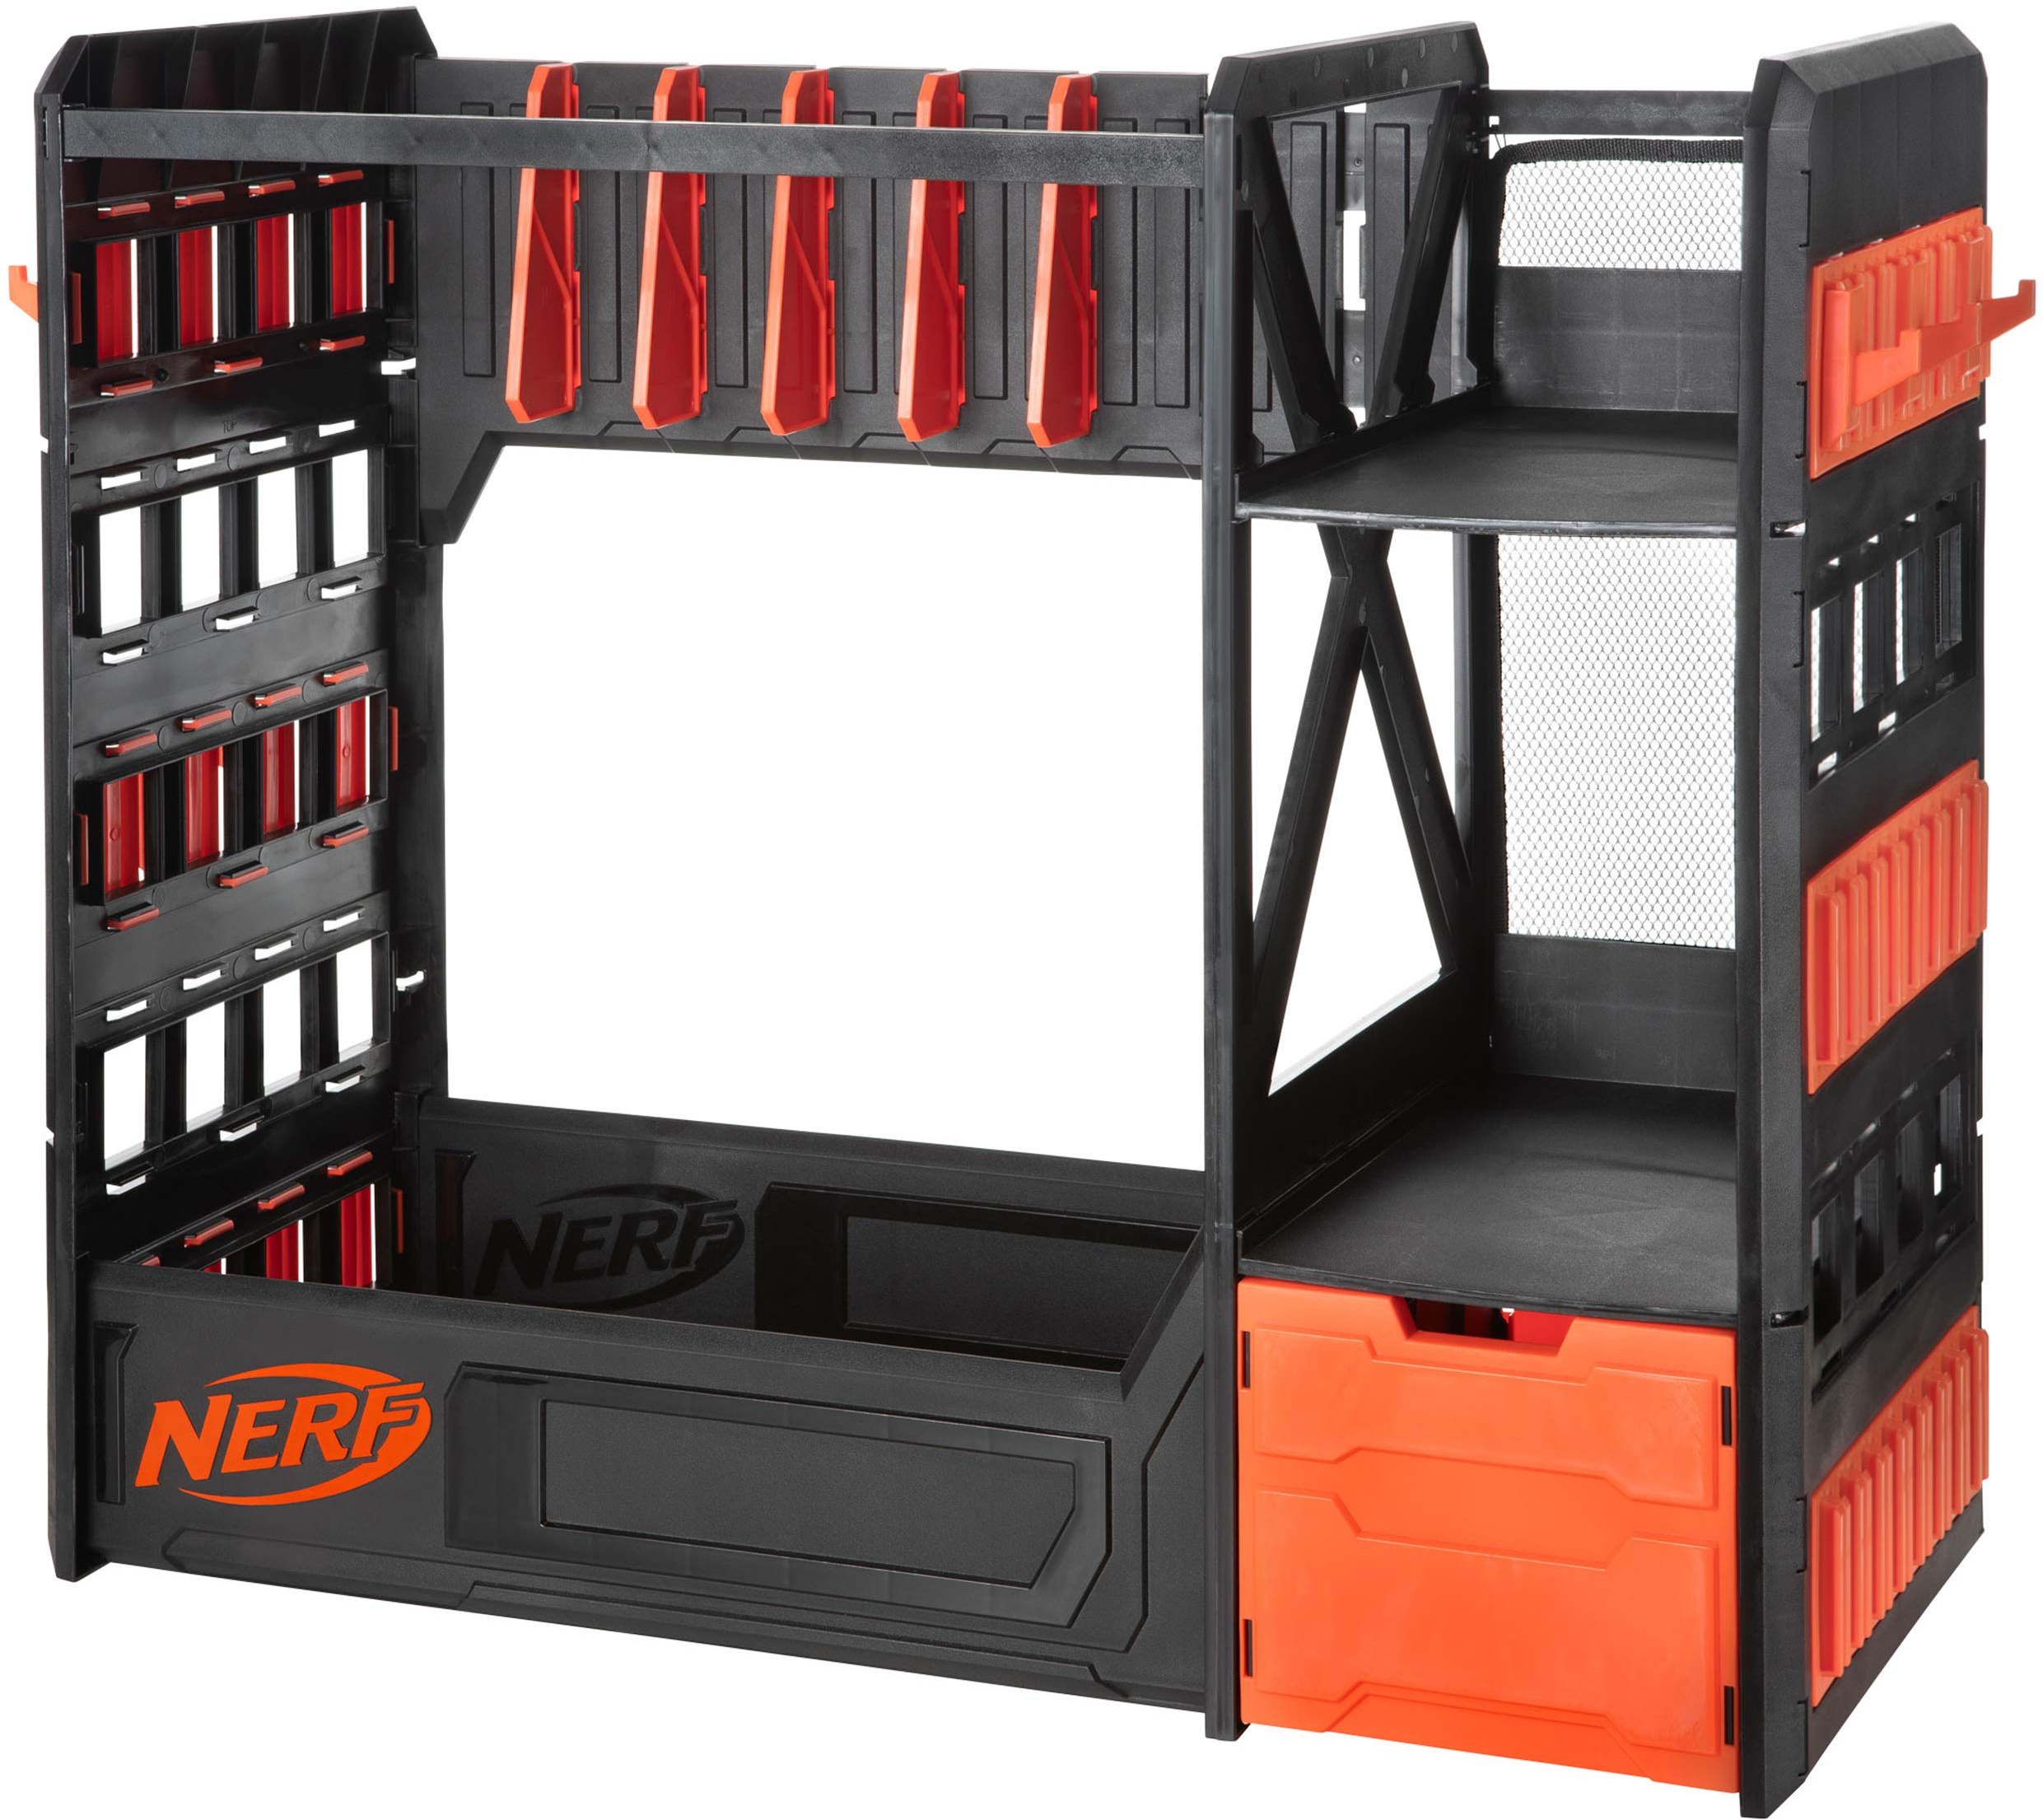 NERF Elite Blaster Rack — место для хранения до шести бластеров, включая полки и аксессуары для ящиков, оранжевый и черный — эксклюзивно для Amazon Nerf